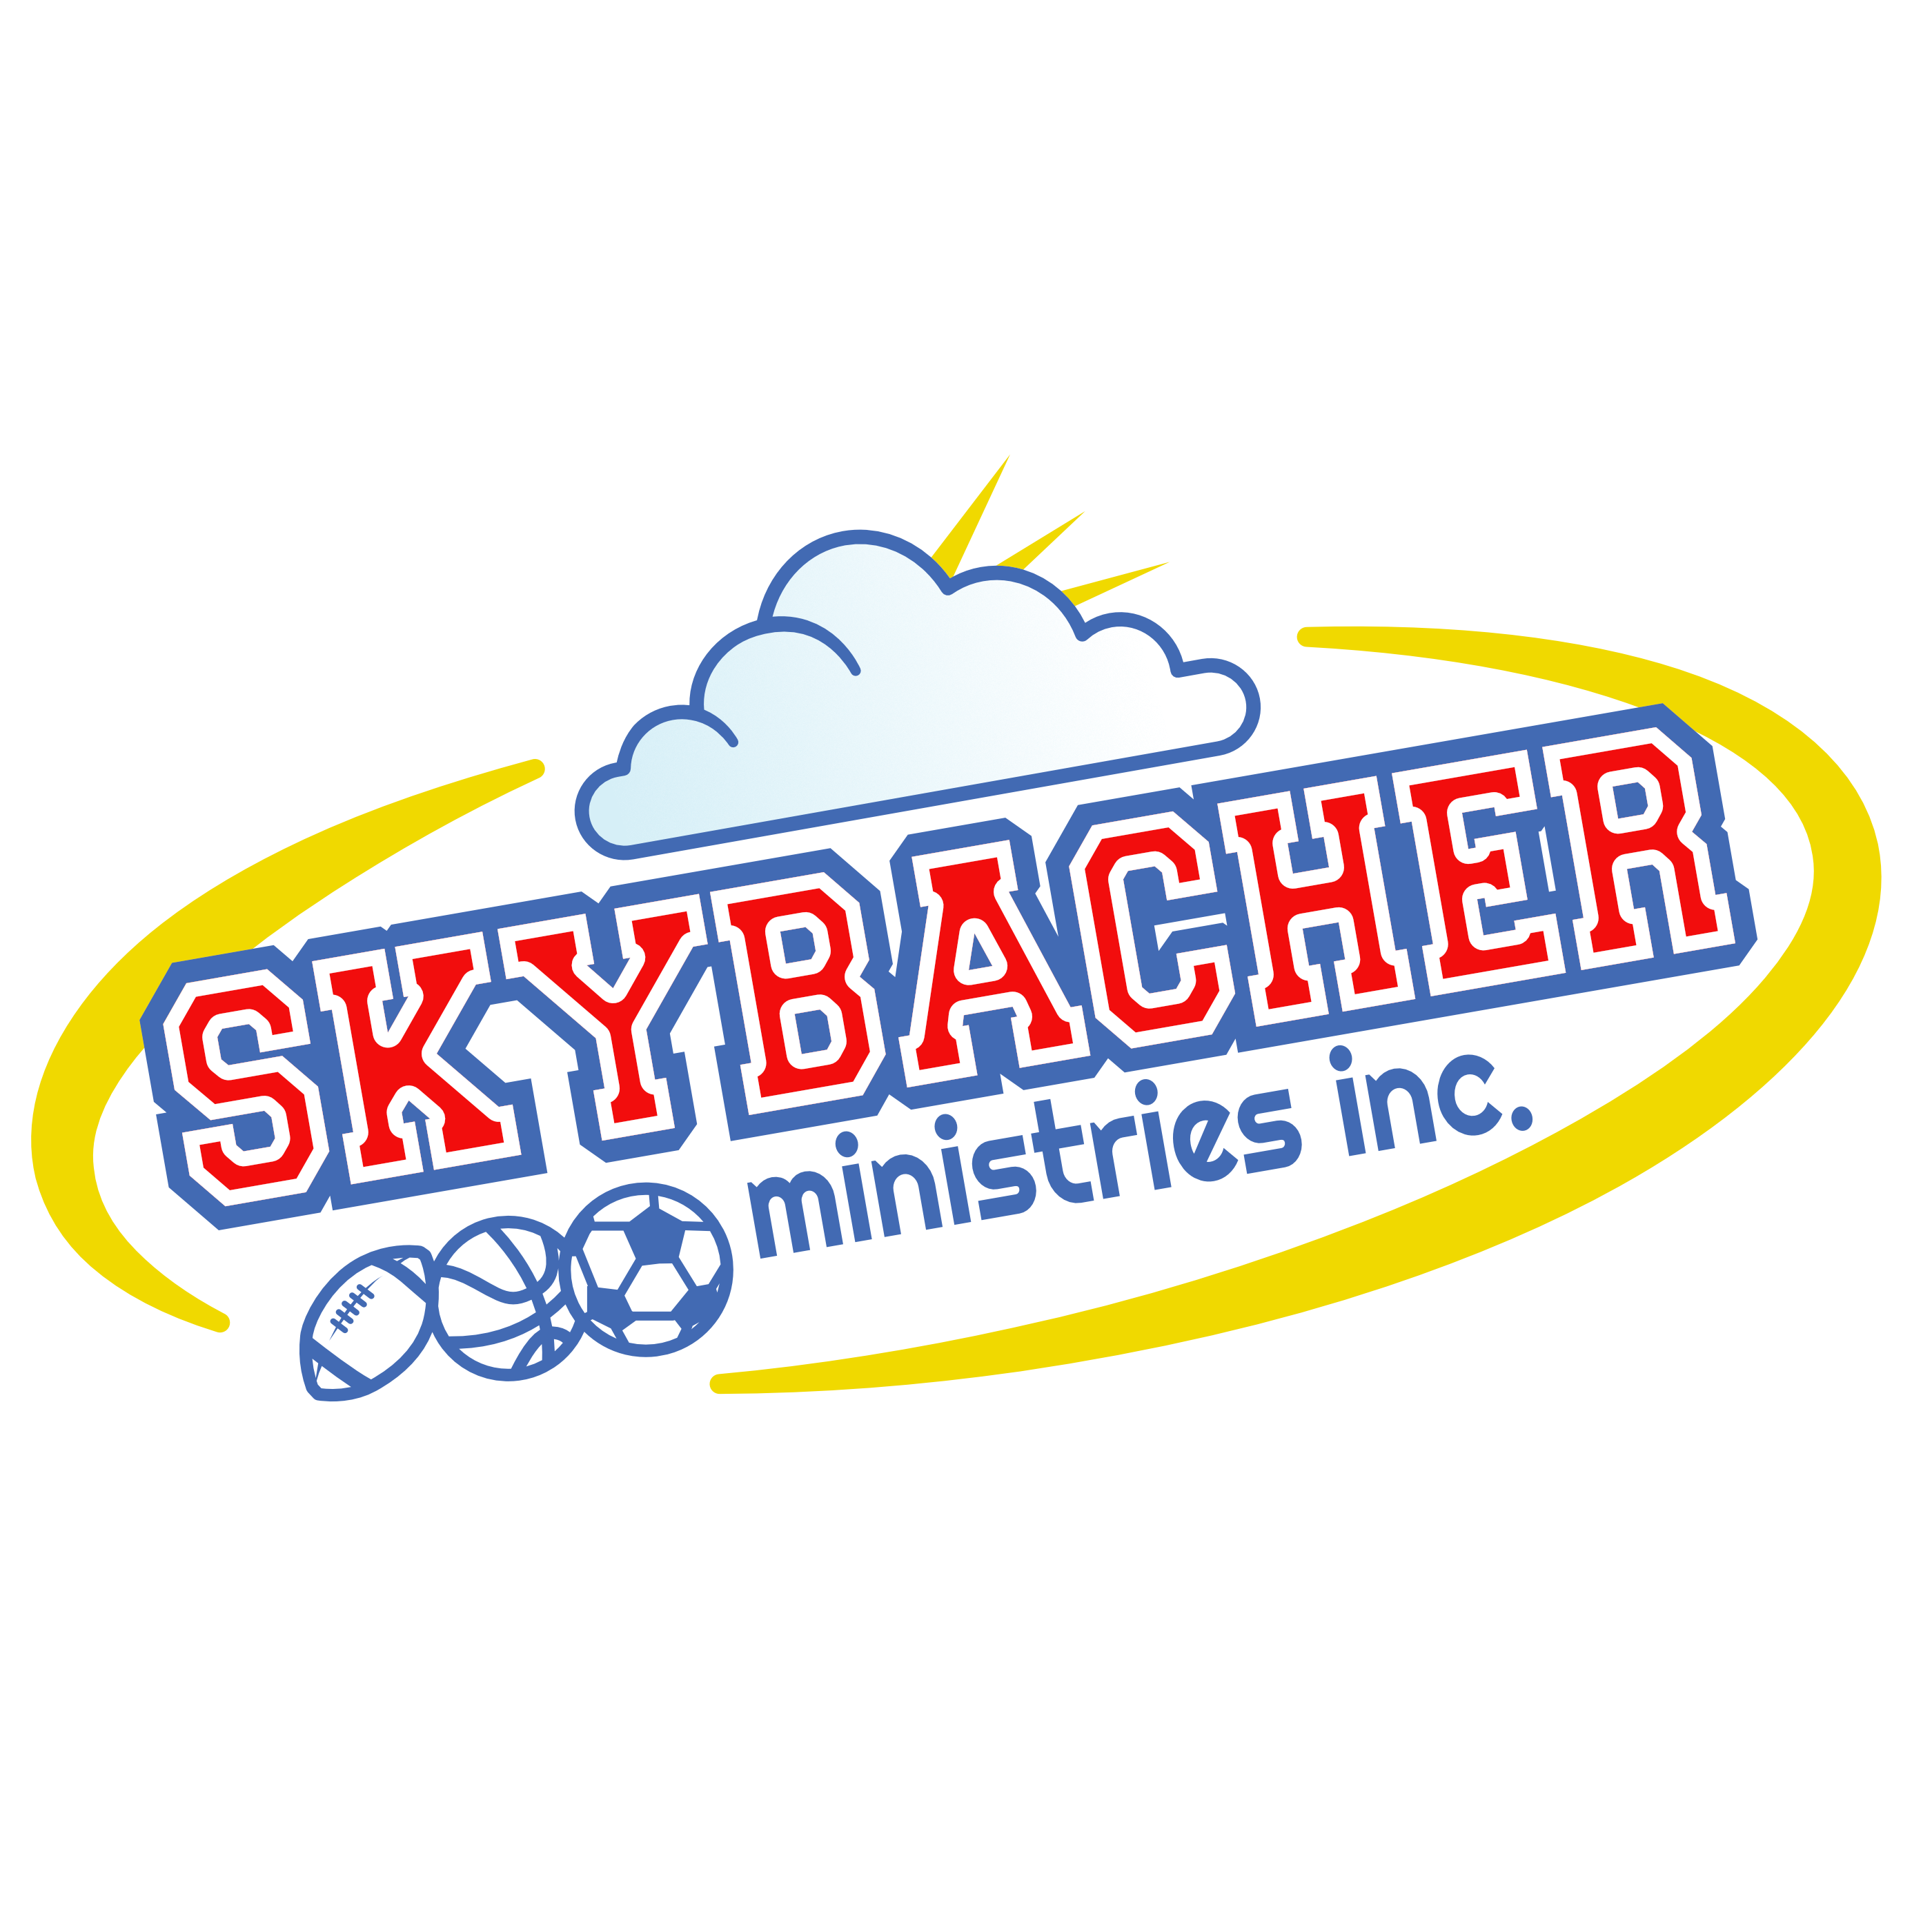 Skybacher Ministries Inc.